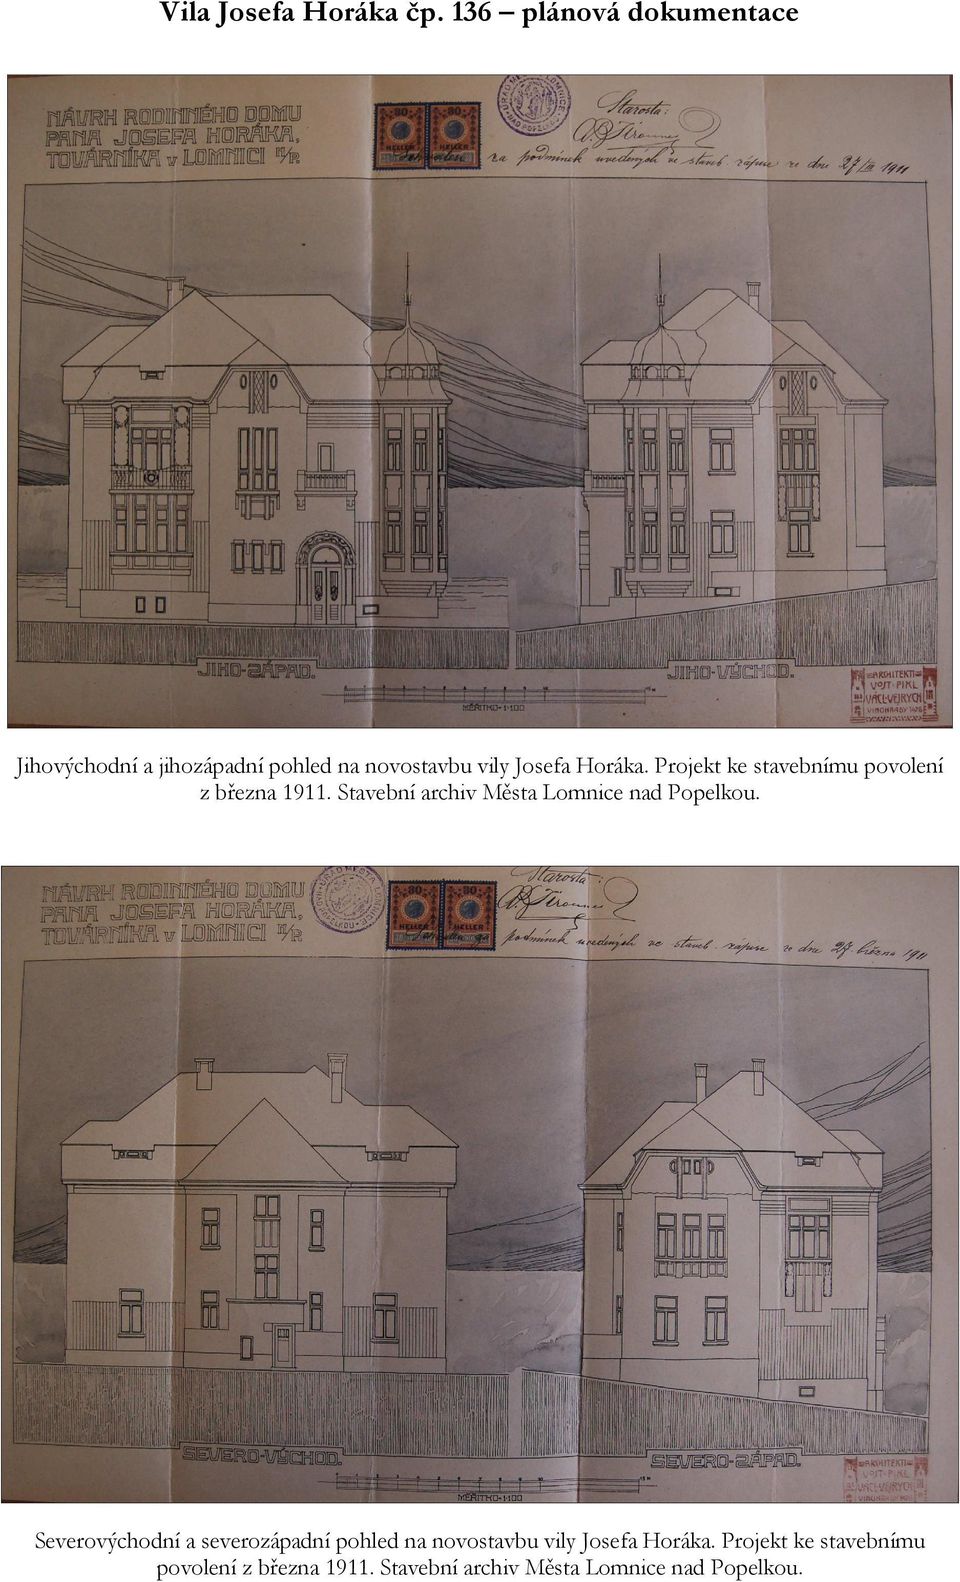 Projekt ke stavebnímu povolení z března 1911. Stavební archiv Města Lomnice nad Popelkou.